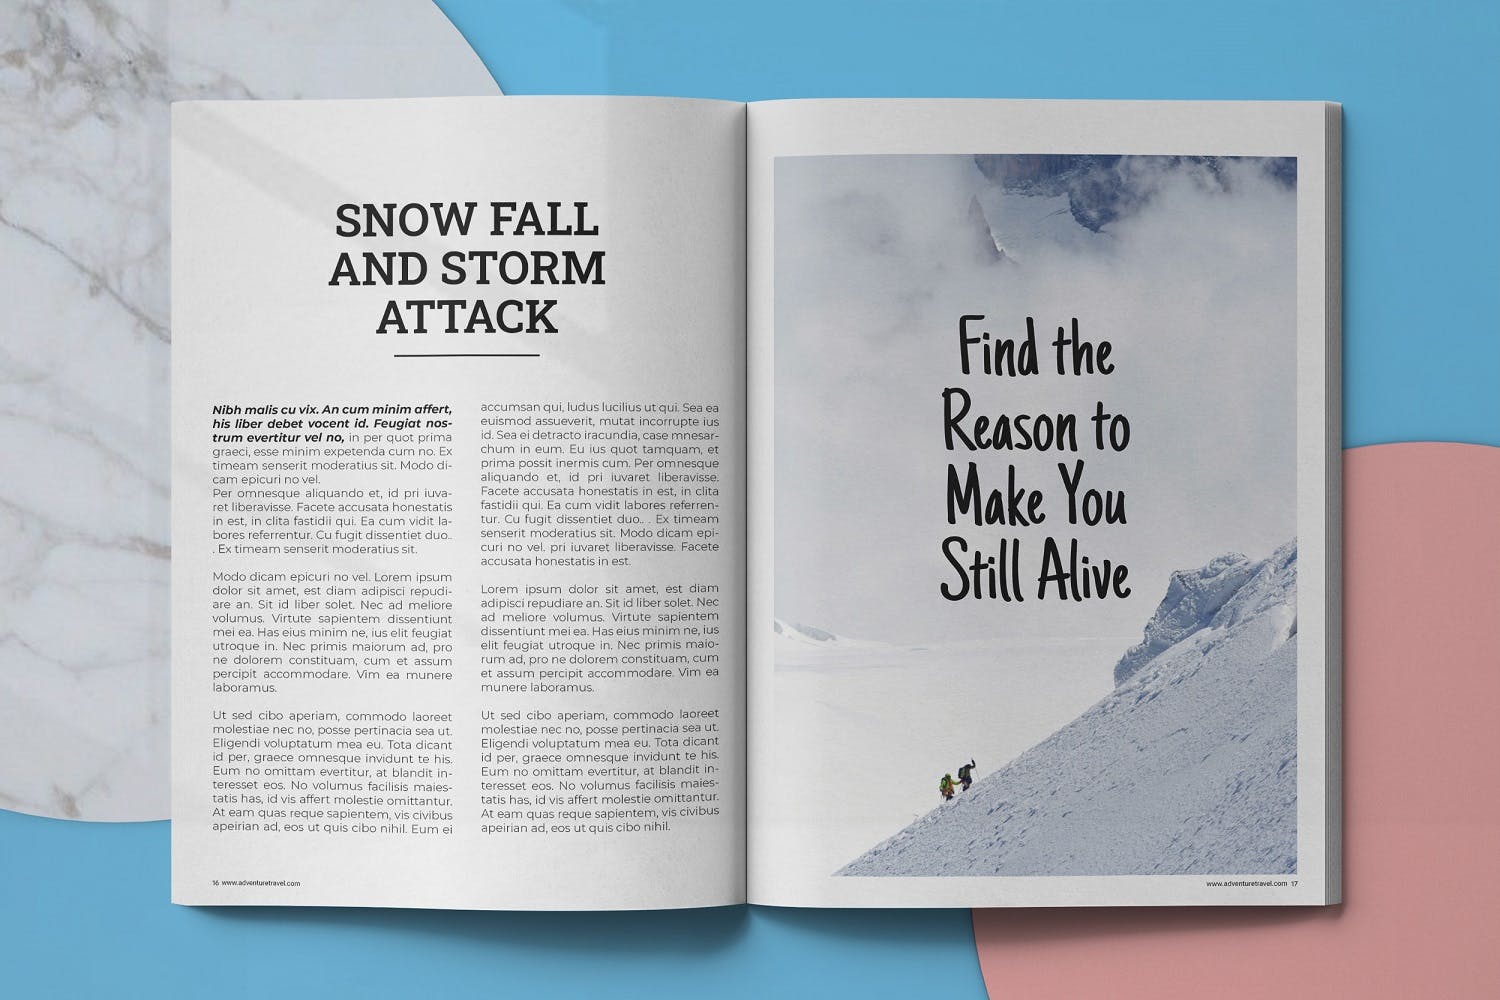 冒险旅行主题第一素材精选杂志排版设计模板 Adventure Travel Magazine Template插图(8)